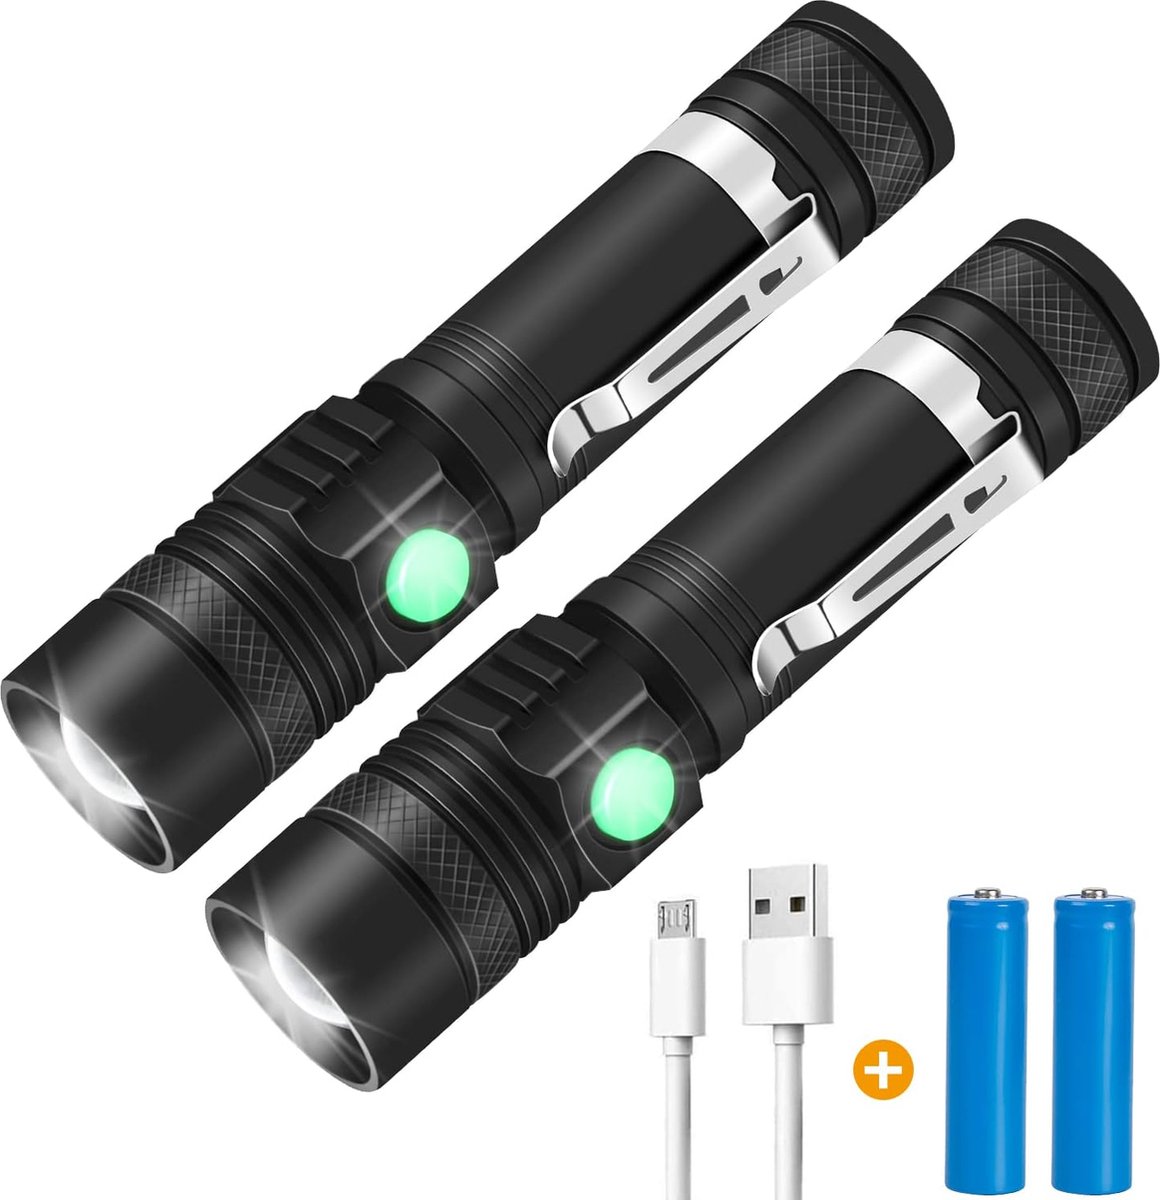 Militaire zaklamp - Zaklamp - Zaklampen - 4 schakelbare verlichtingsmodi - Zoomfunctie - USB C oplaadbaar - Zaklamp LED Oplaadbaar - 1000 Lumen - Waterdicht - Zwart - Set van 2